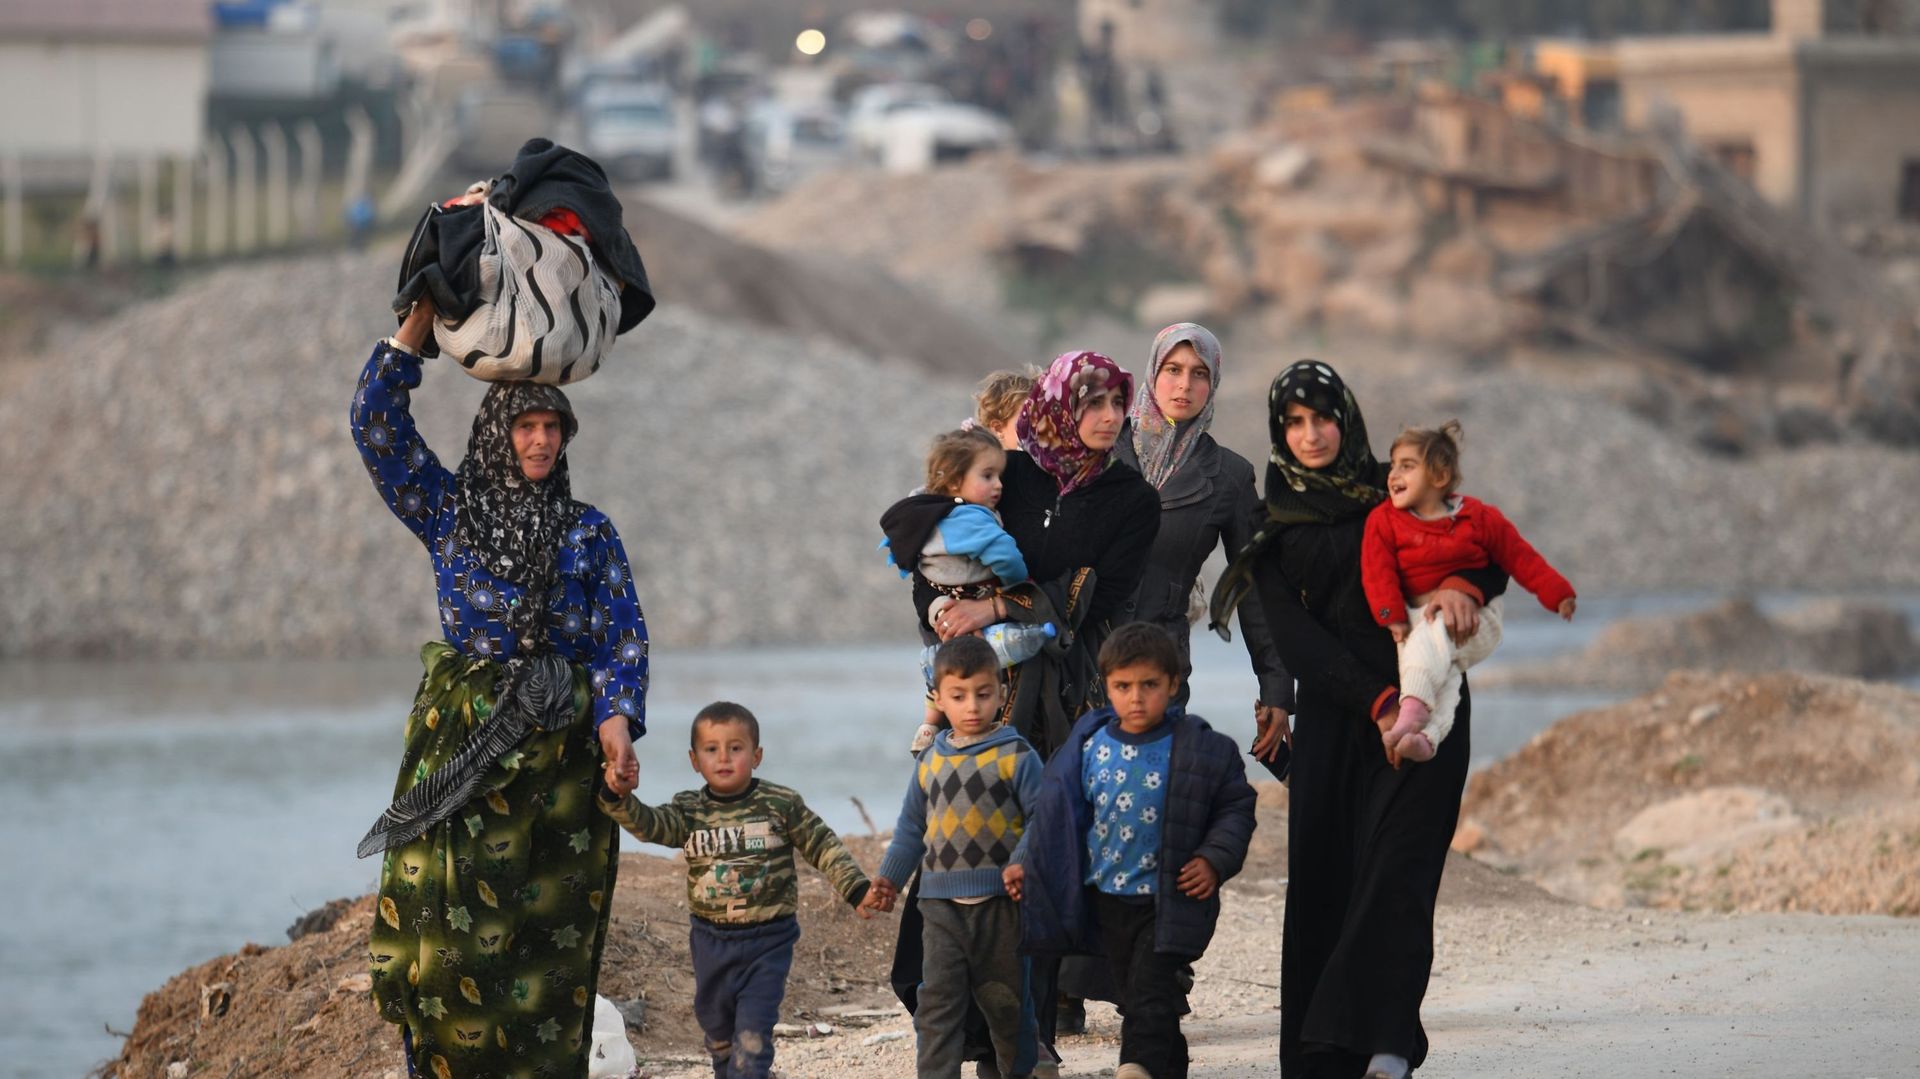 Selon l'ONU, 900.000 personnes fuient les frappes aériennes dans la région d'Idlib, contraintes de trouver refuge dans des camps qui manque de place